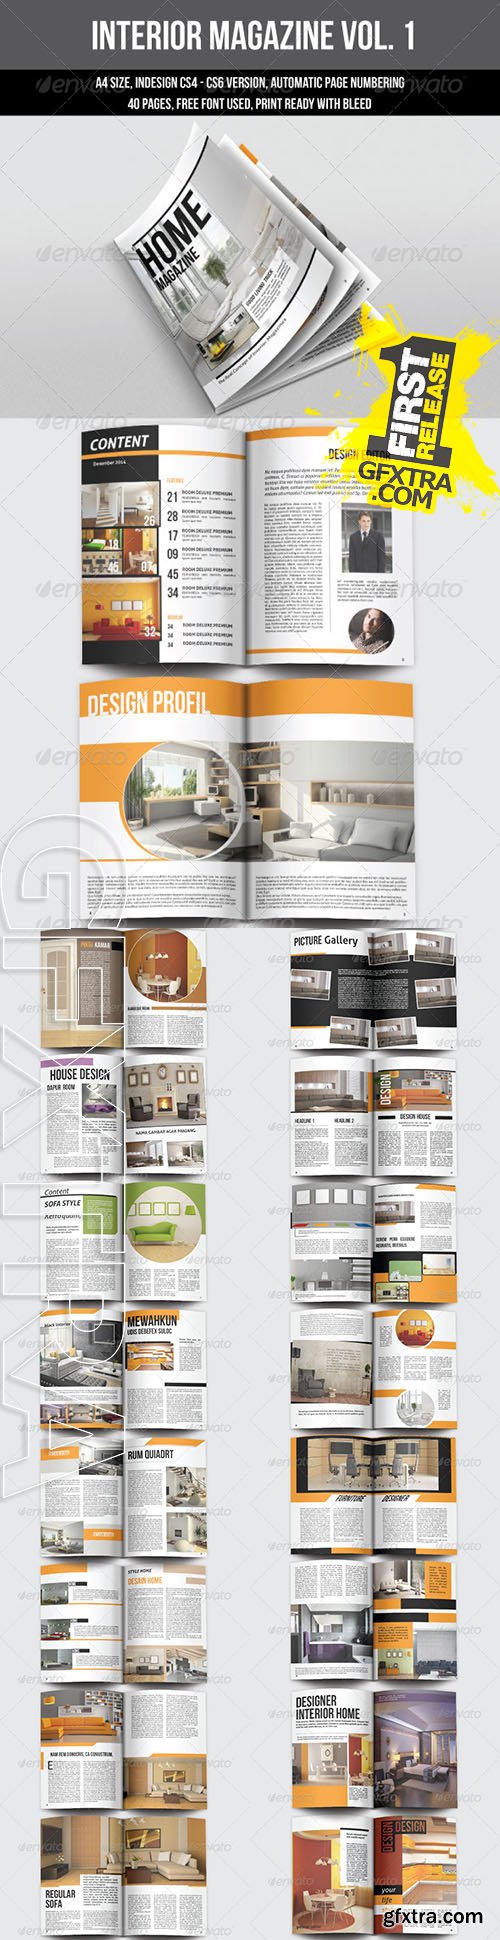 Interior Magazine Template - Graphicriver 6583760